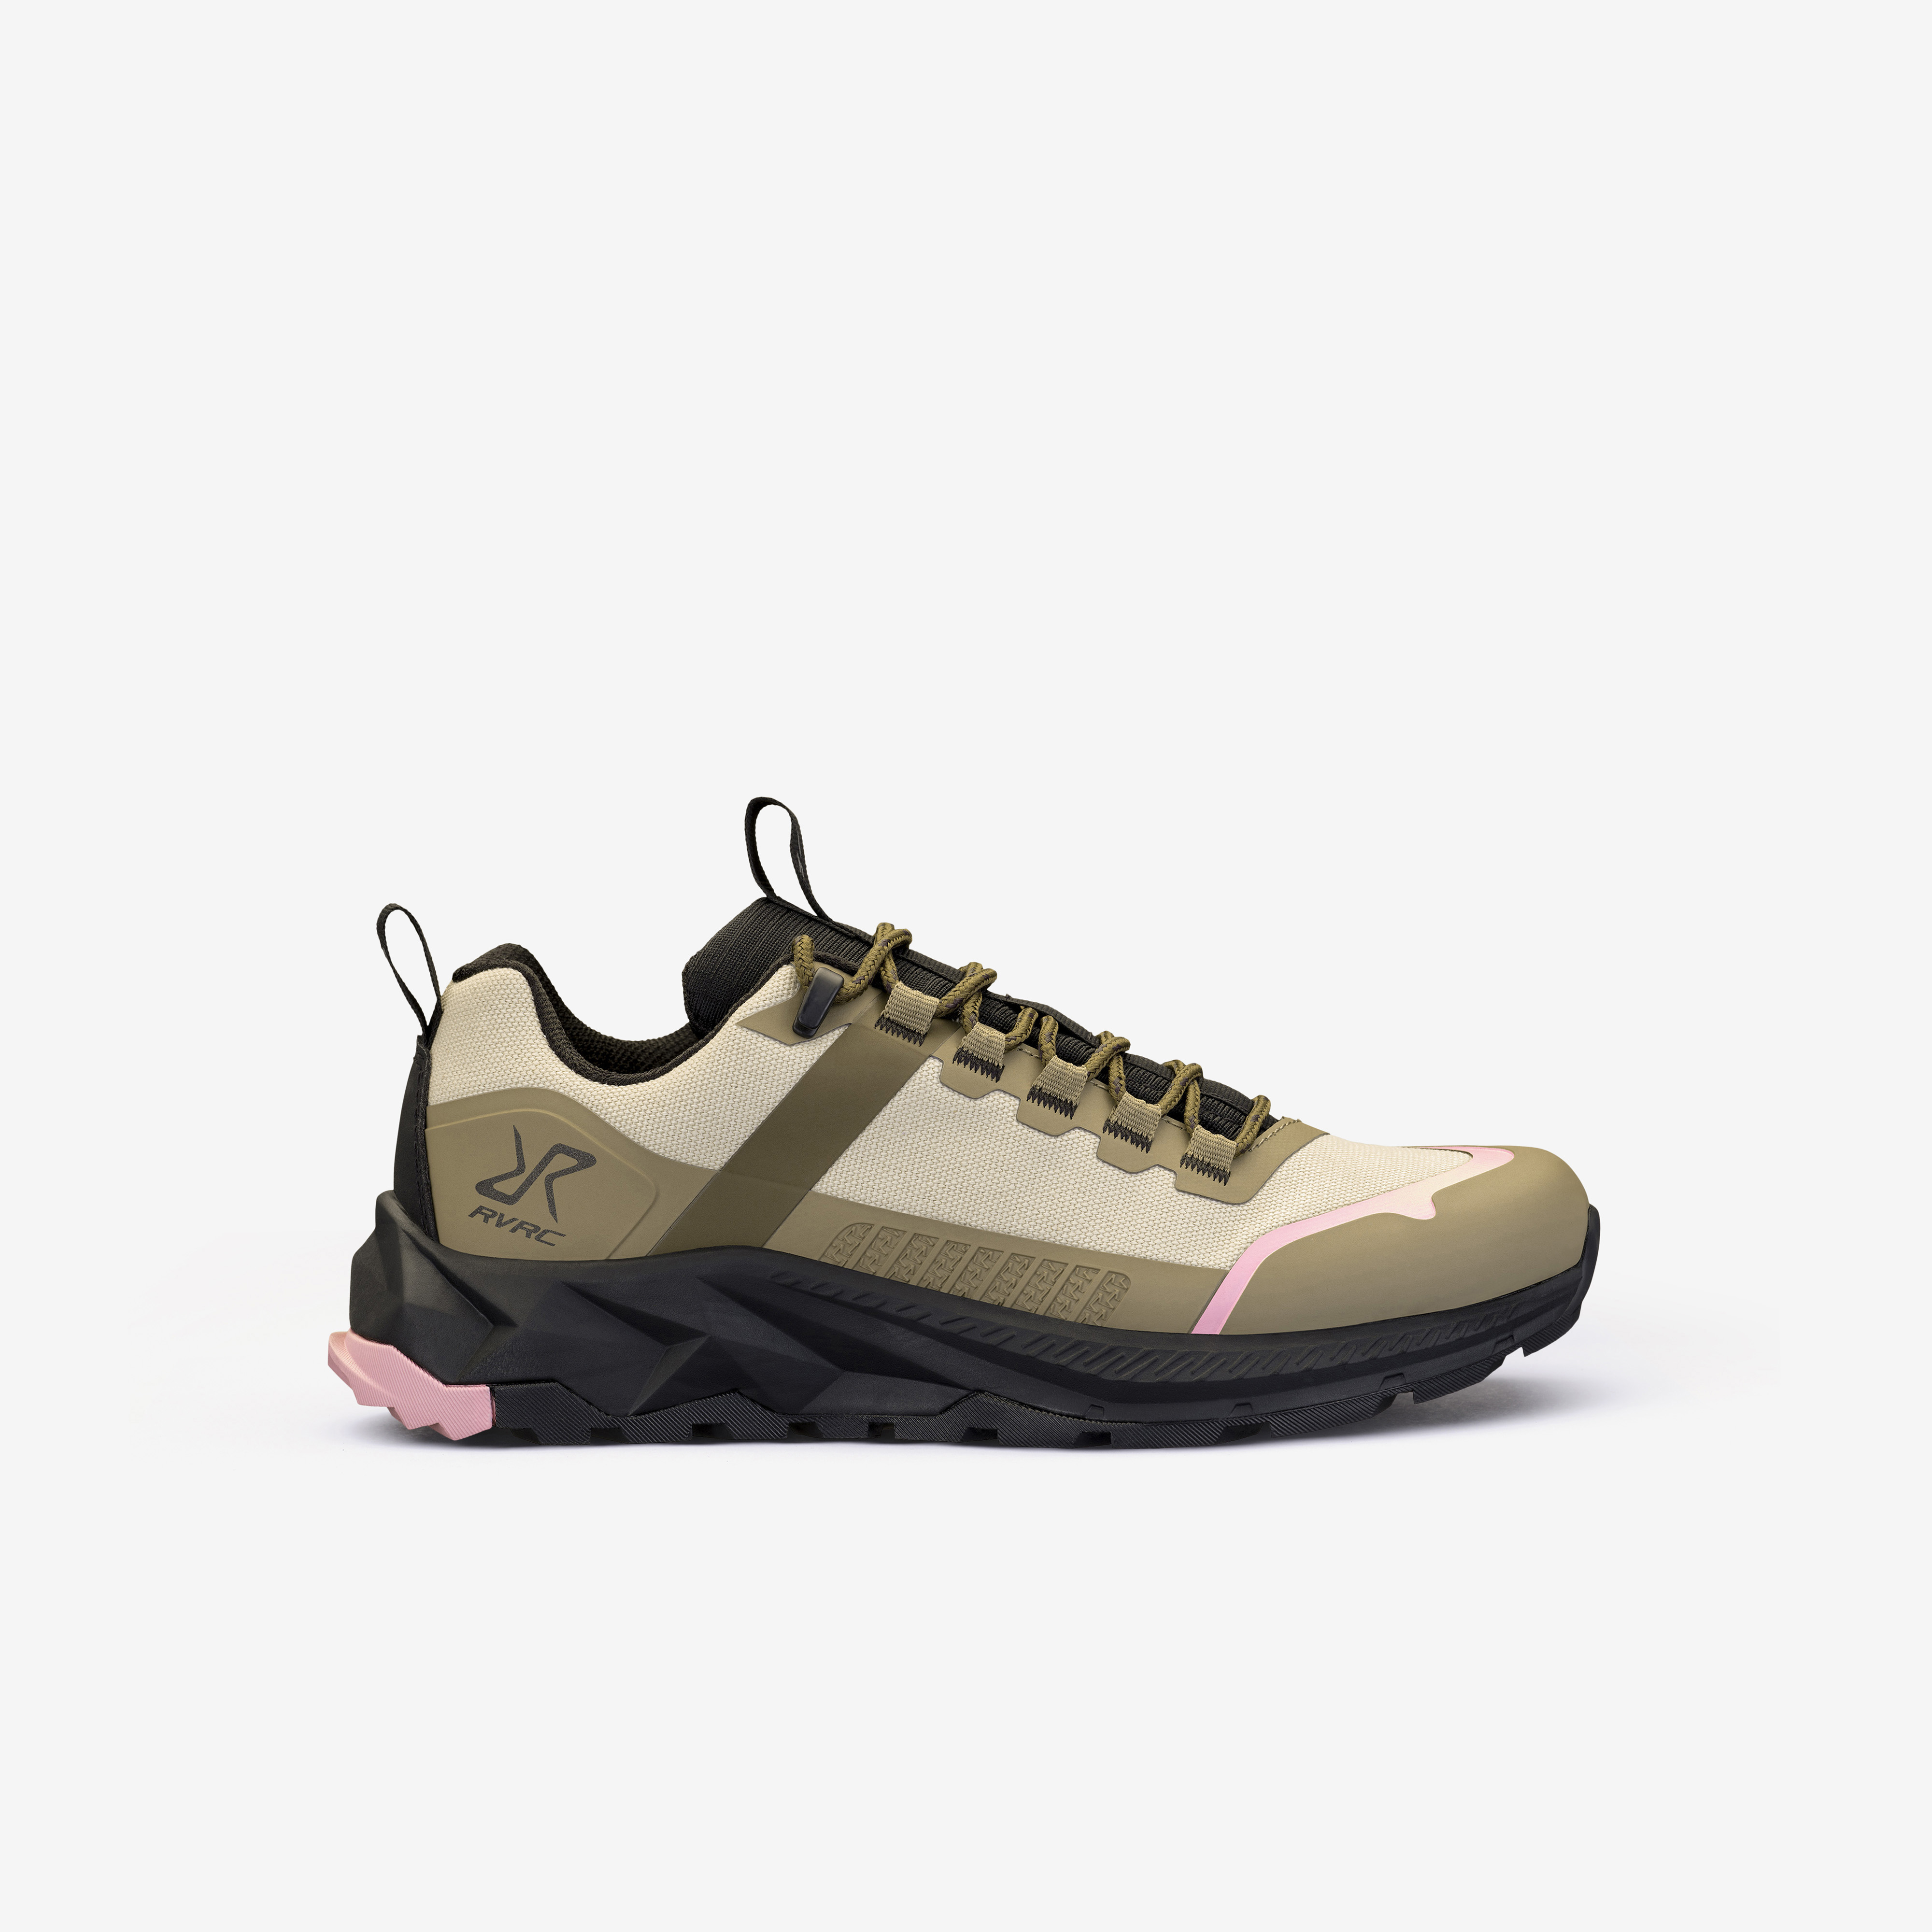 Phantom Trail Low Hiking Shoes – Dam – Rainy Black Storlek:36 – Skor